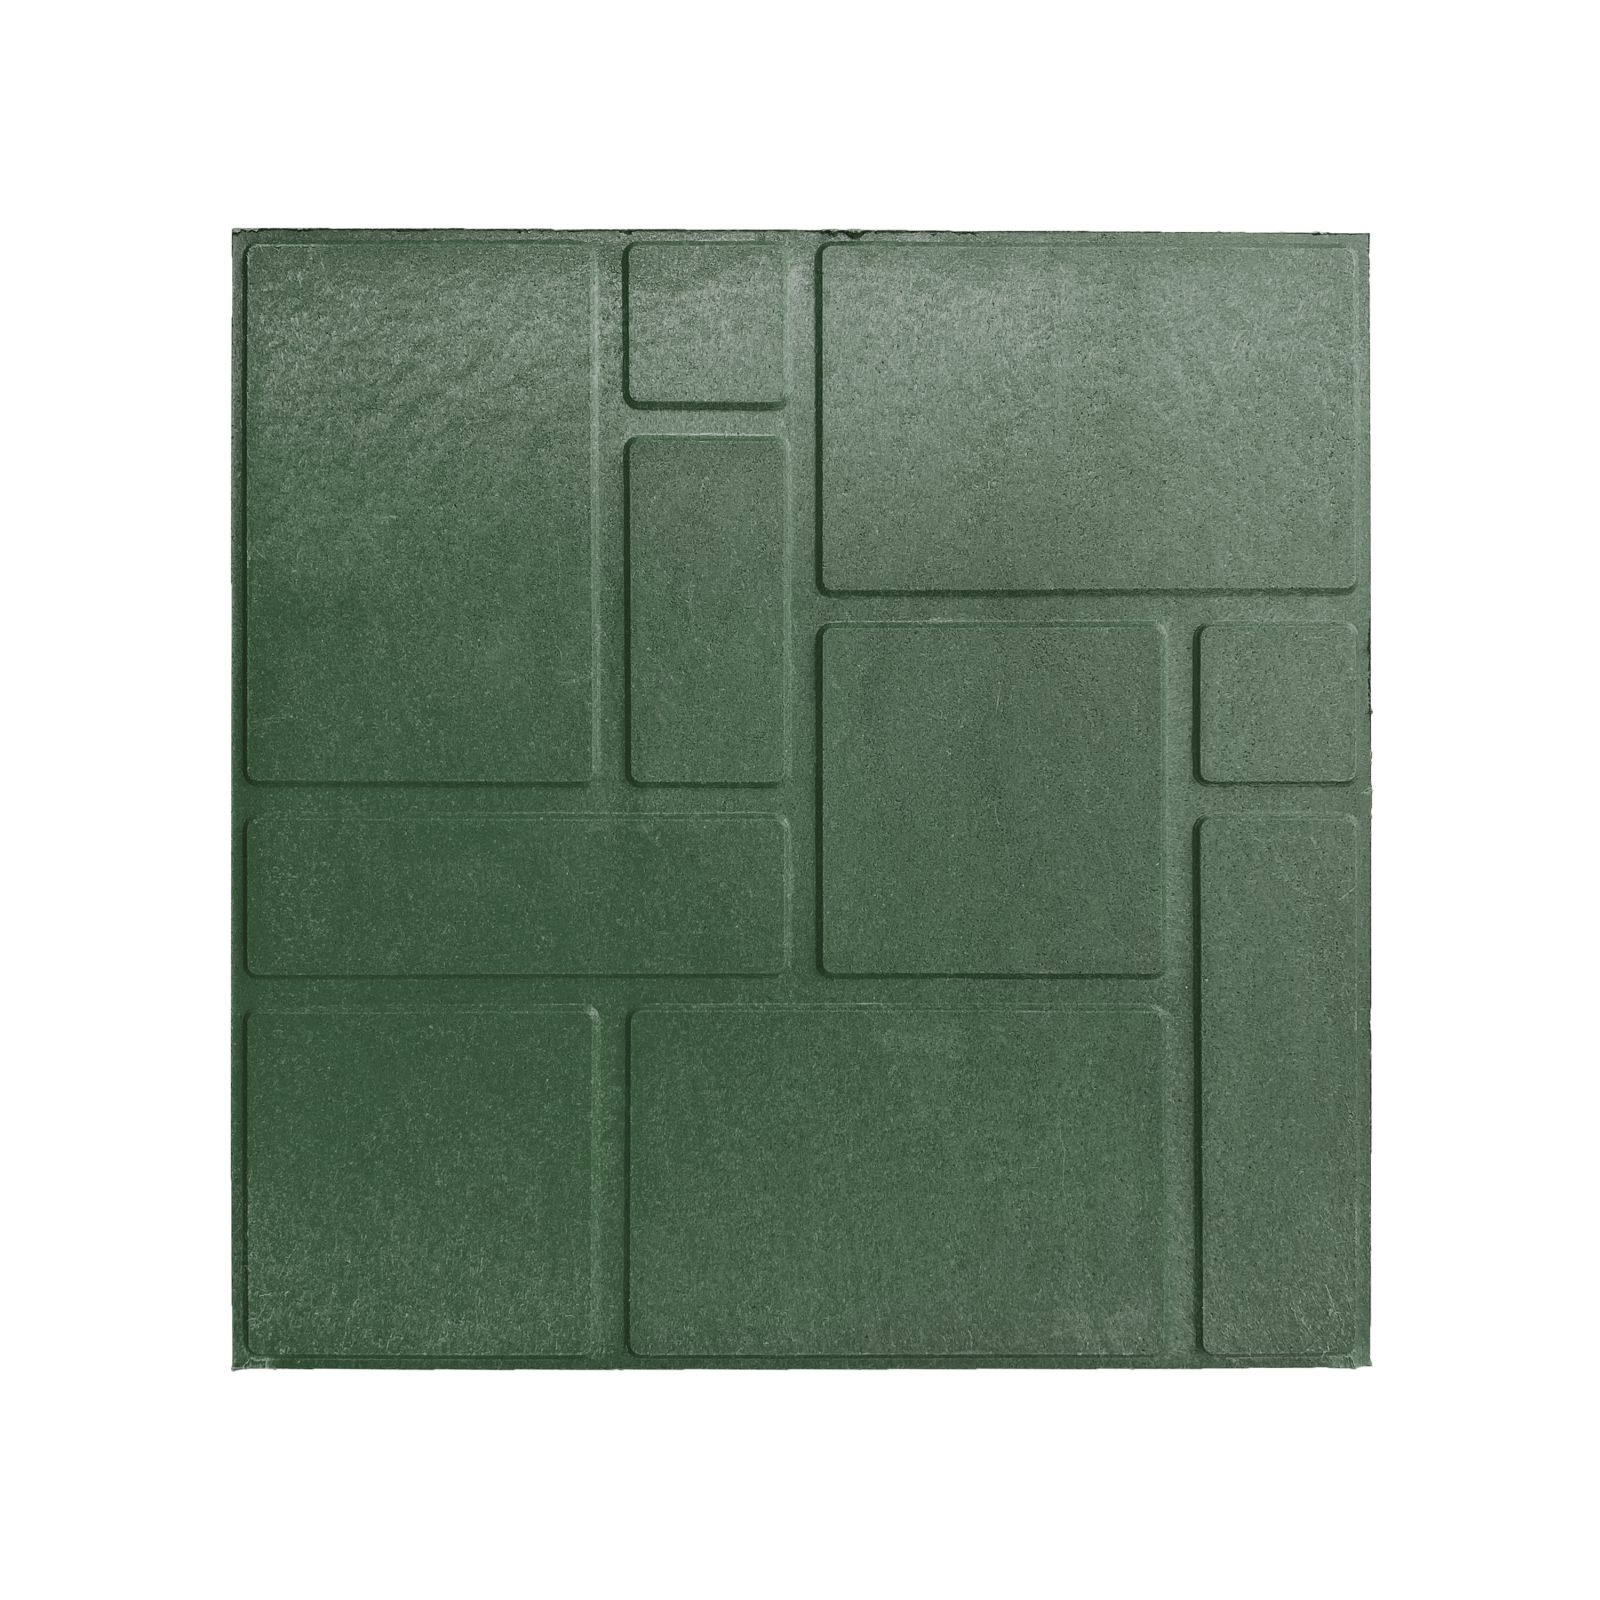 Плитка полимерпесчаная Экогум Кирпичи,33х33см, толщина 20мм, цвет зеленый, 4шт/уп